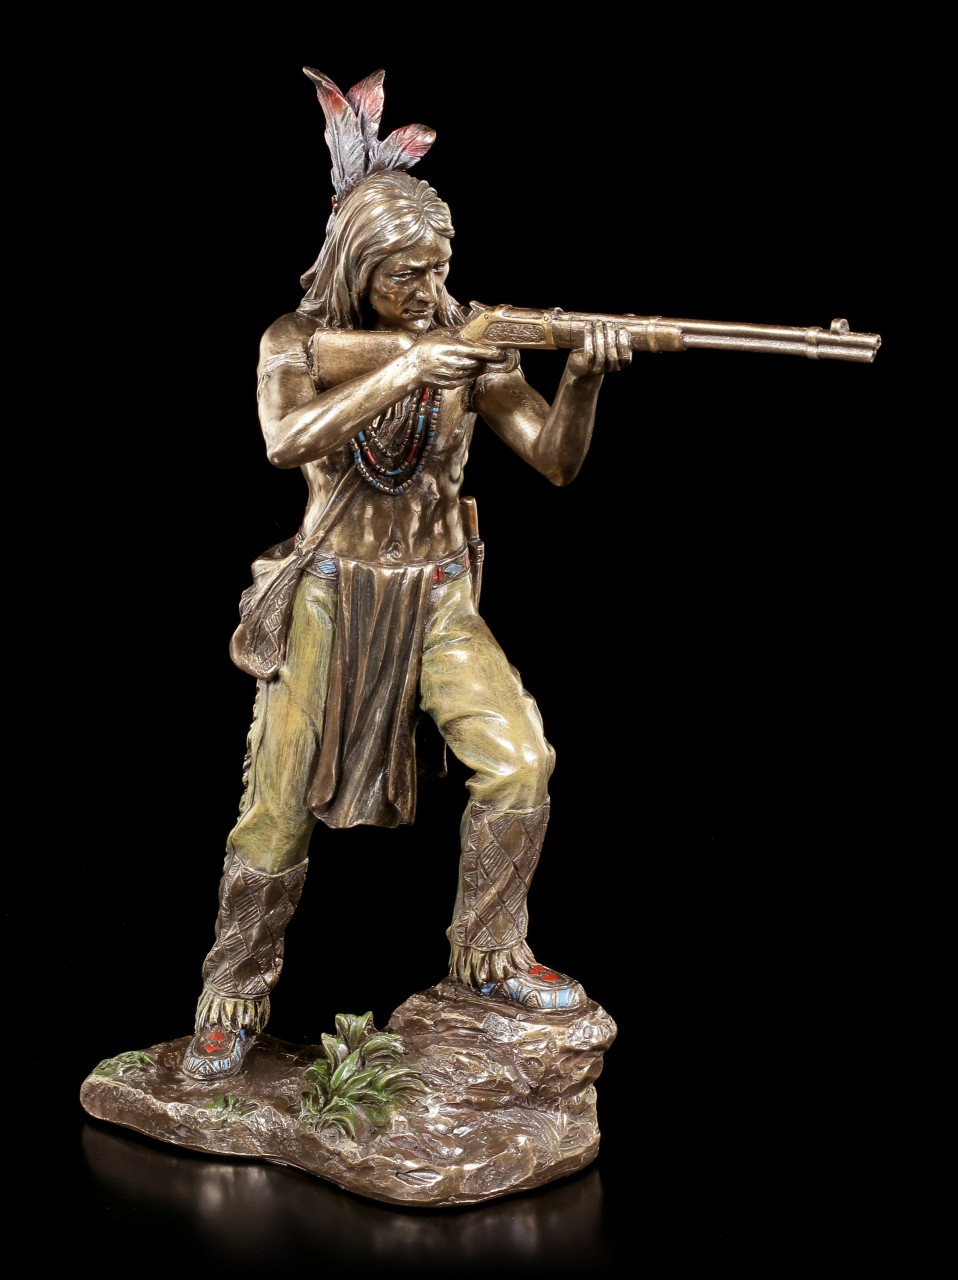 Indianer Figur - Krieger zielt mit Gewehr